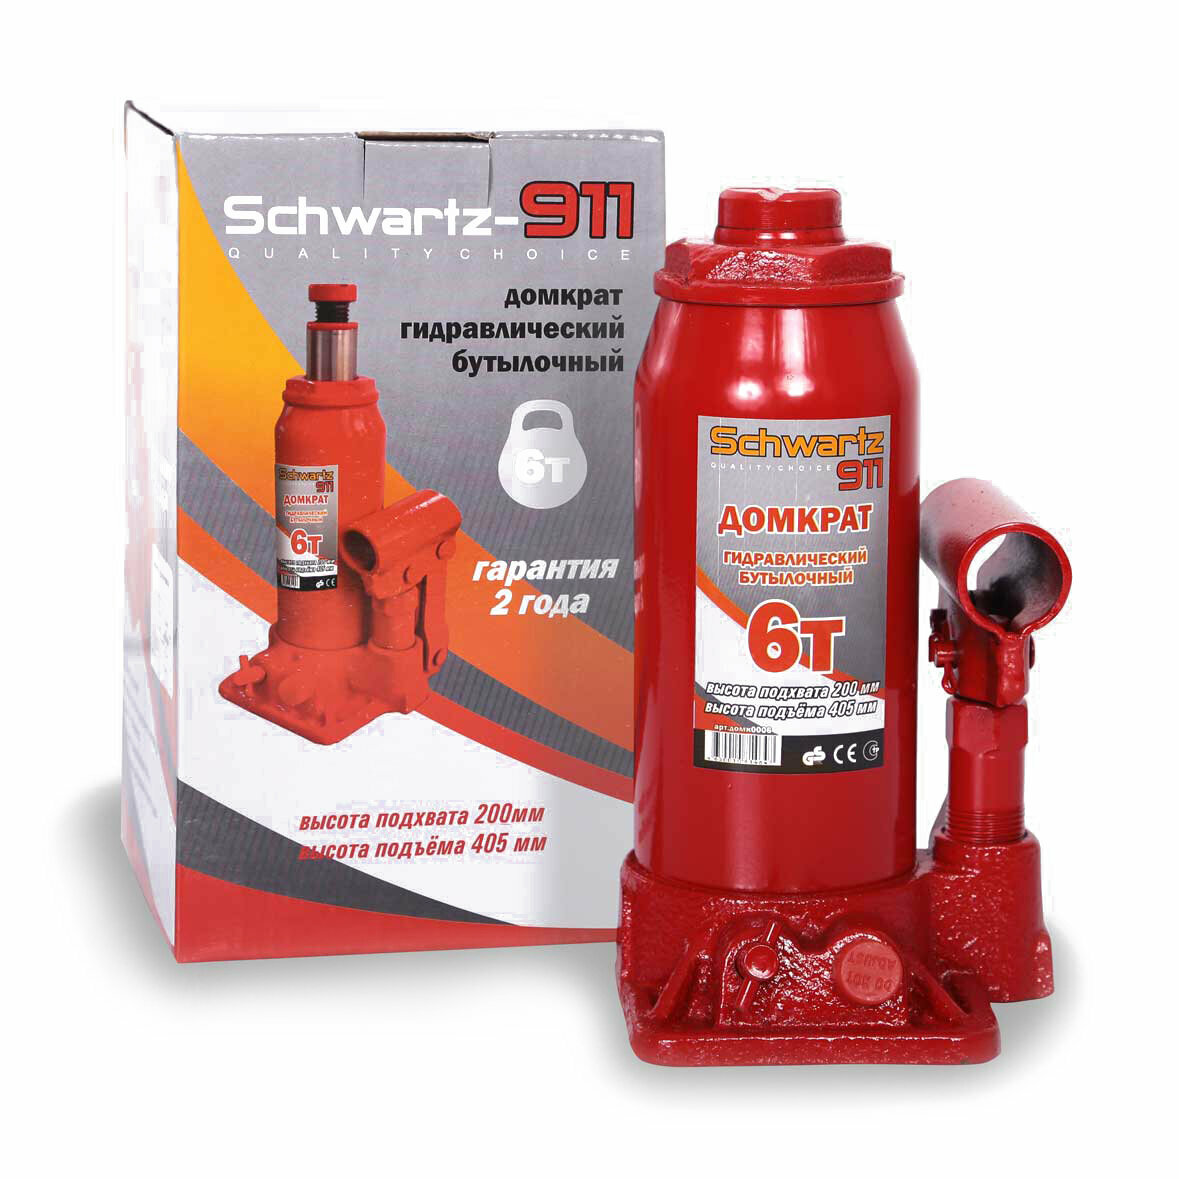 Домкрат автомобильный бутылочный Schwartz-911 6 т.(200-405 мм), карт.кор.